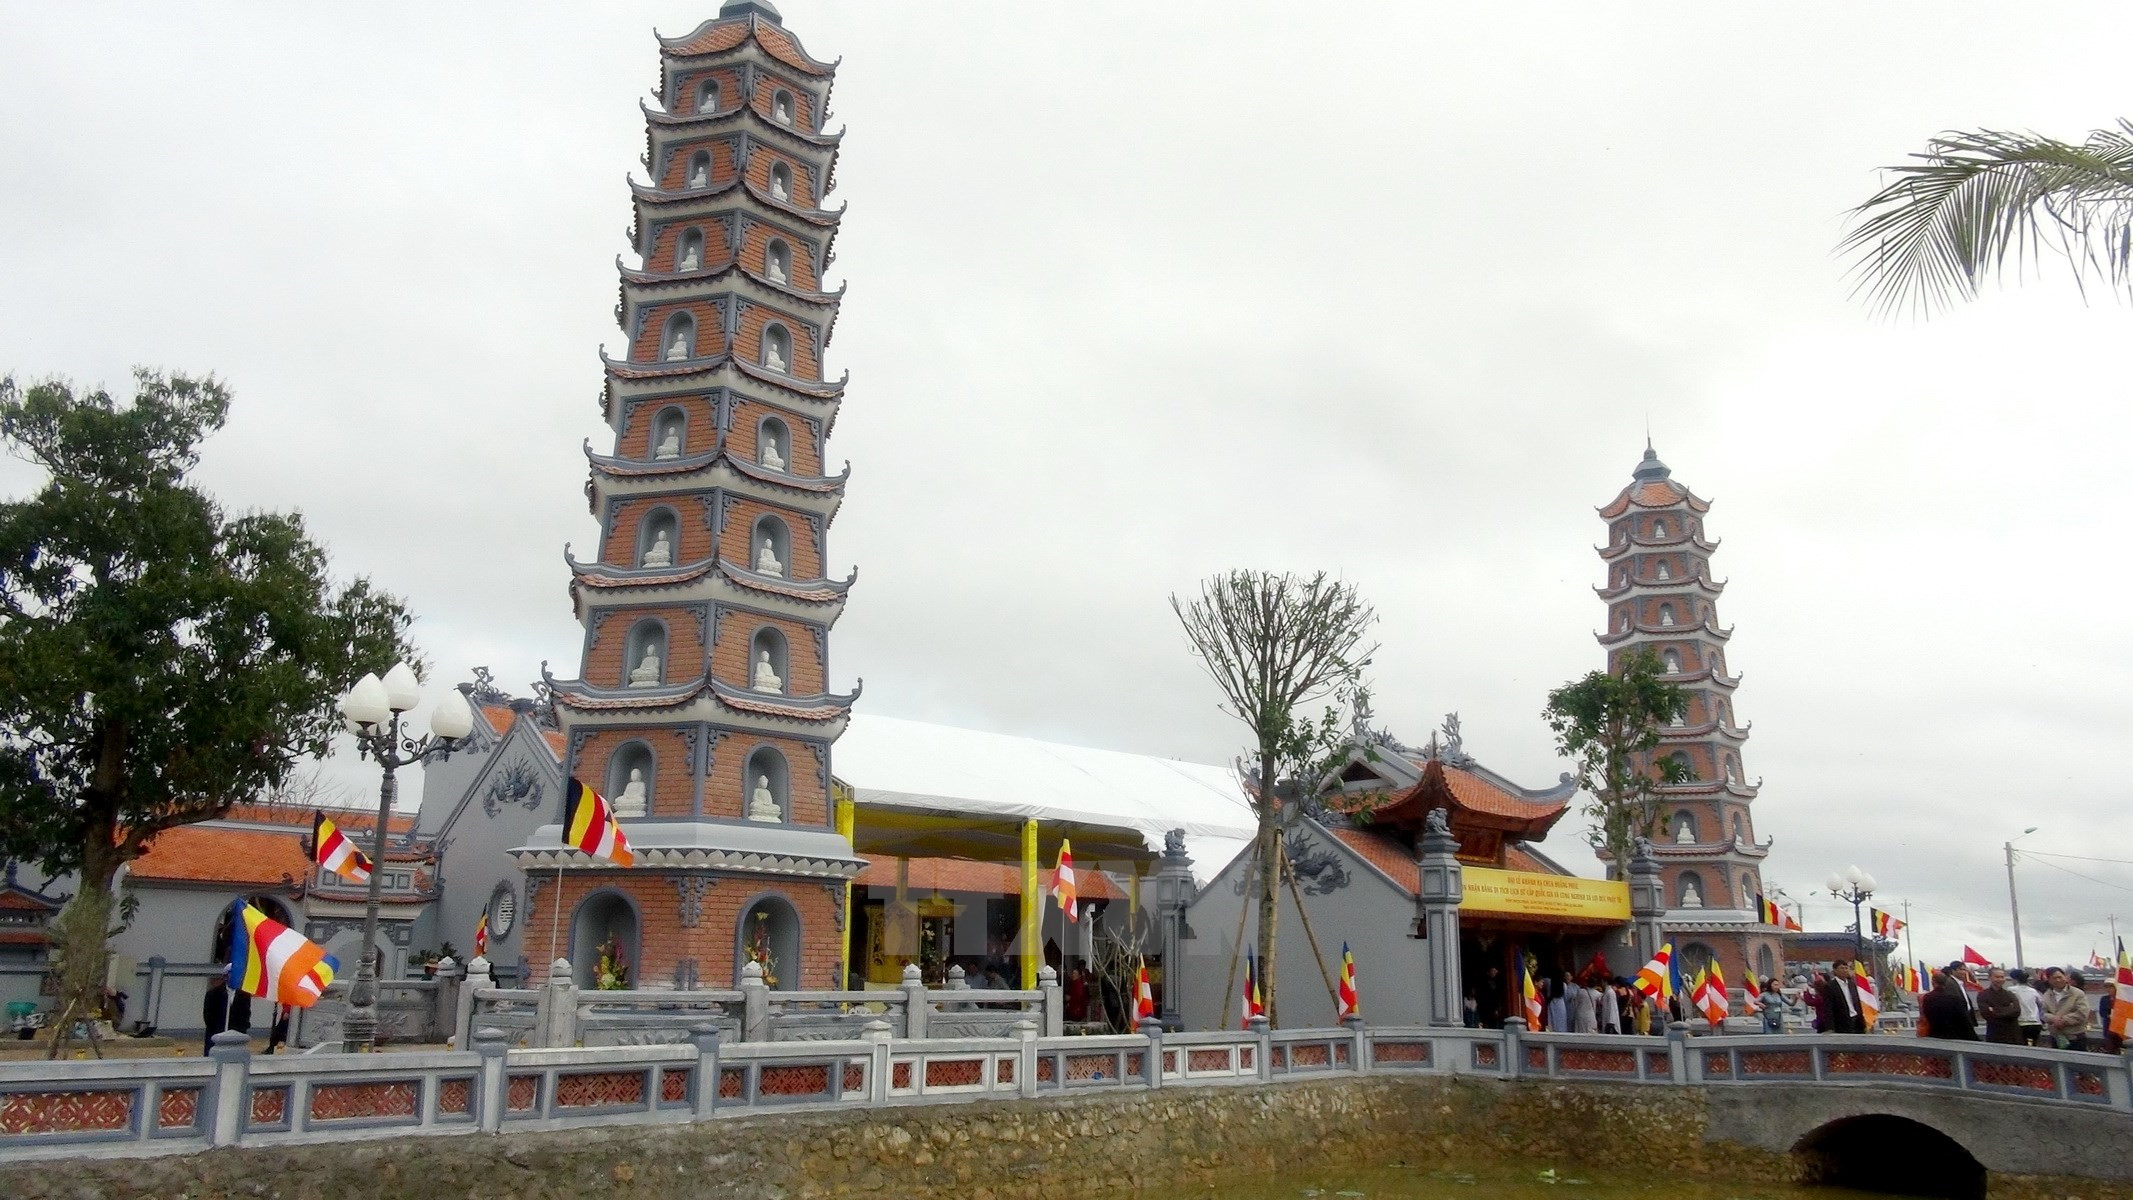 Du lịch tâm linh Quảng Bình - Nét văn hóa truyền thống của dân tộc 